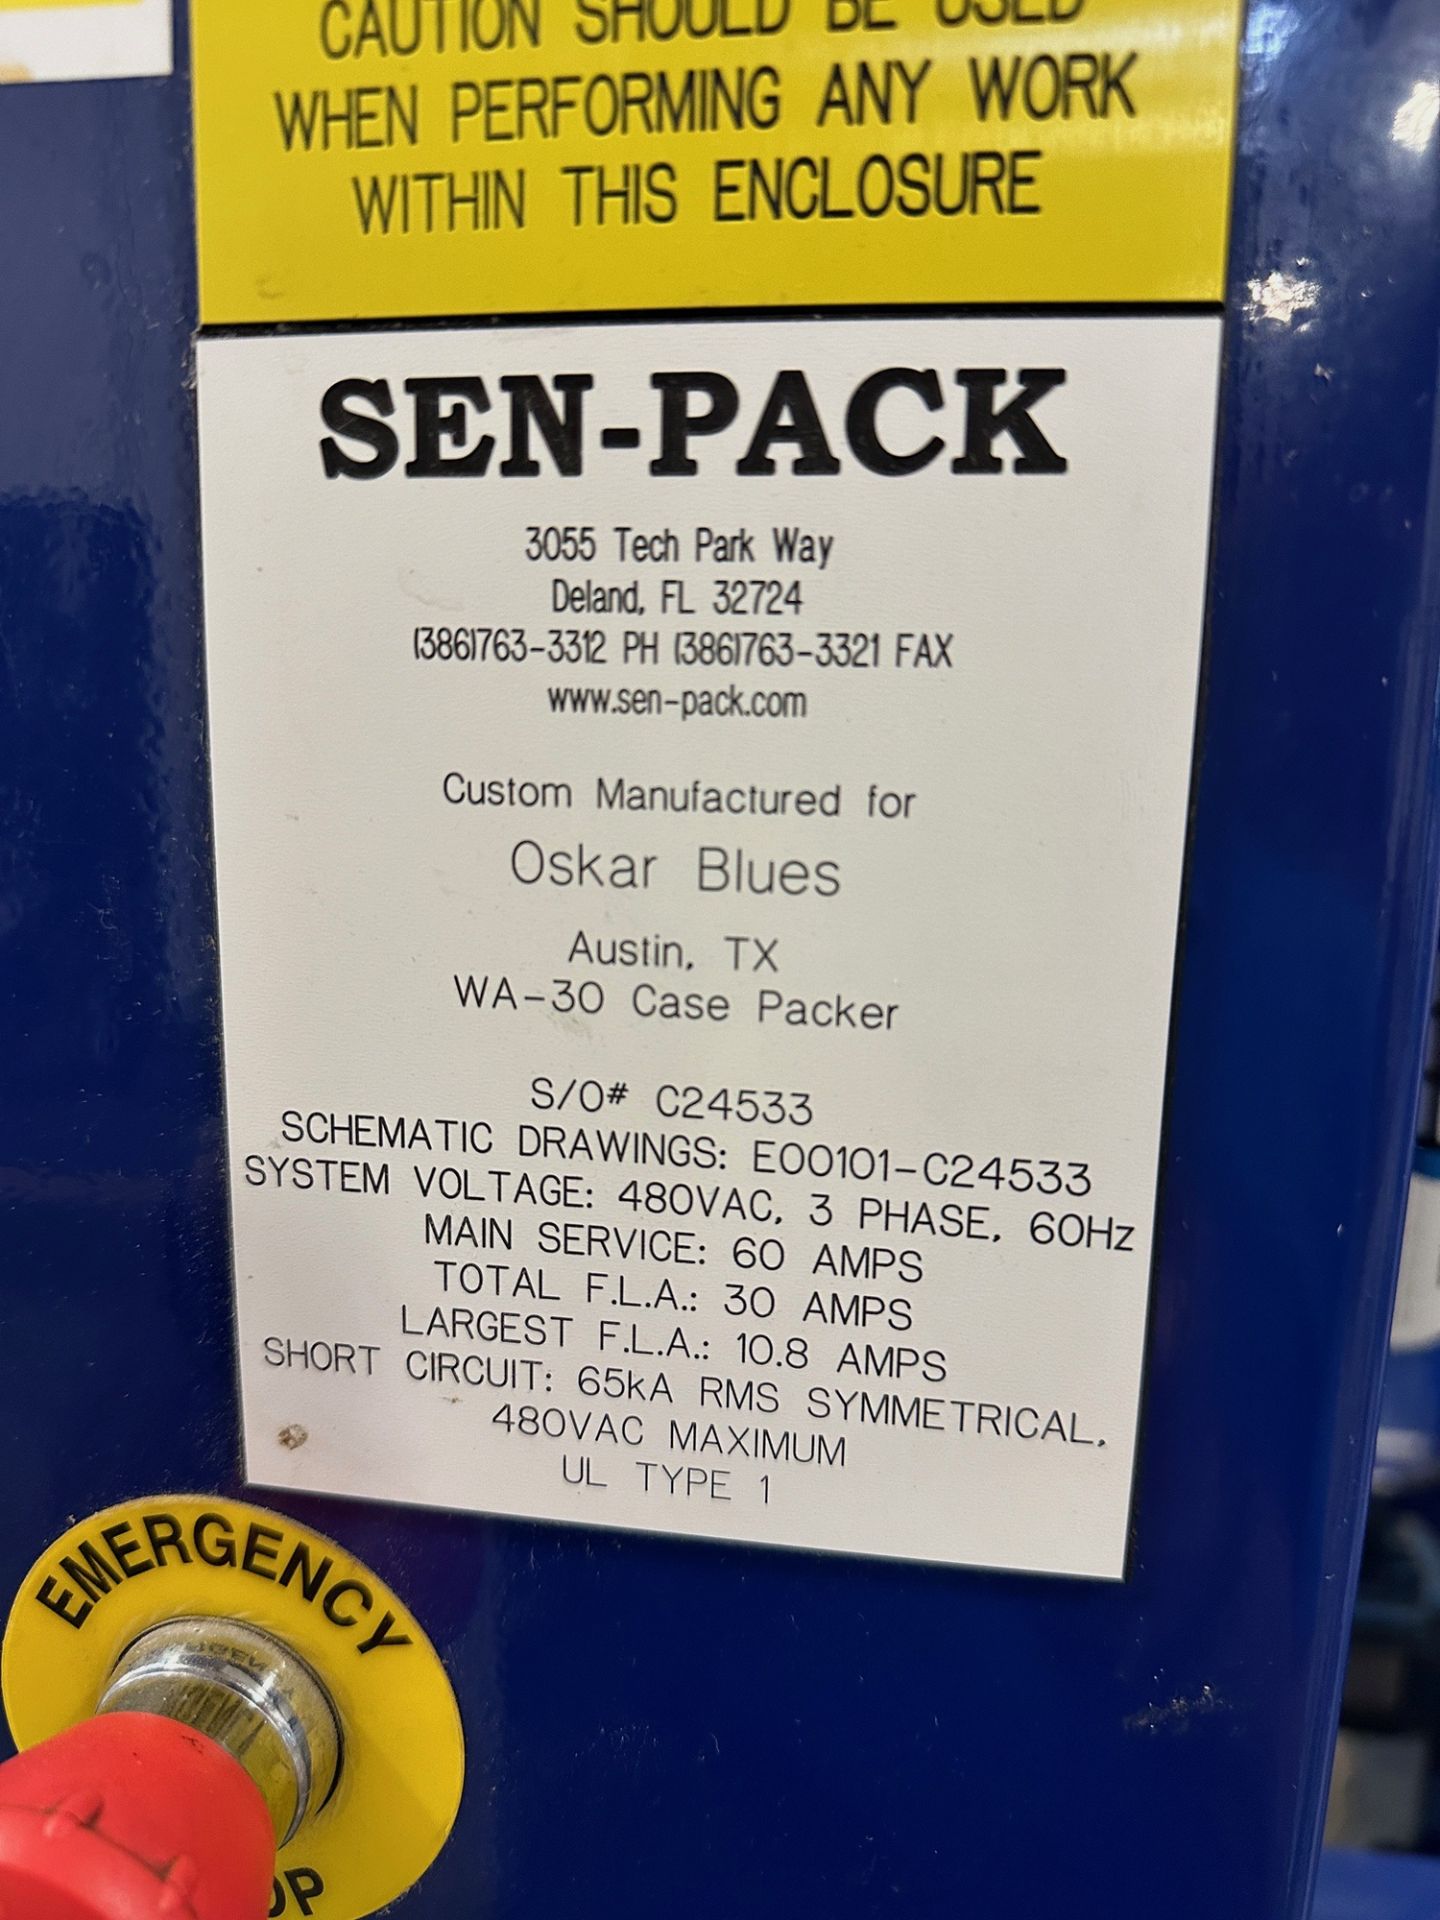 Sen-Pack Model WA-30 Case Packer, 480V/3ph/60Hz, S/O: C24533 | Rig Fee $3995 - Image 11 of 11